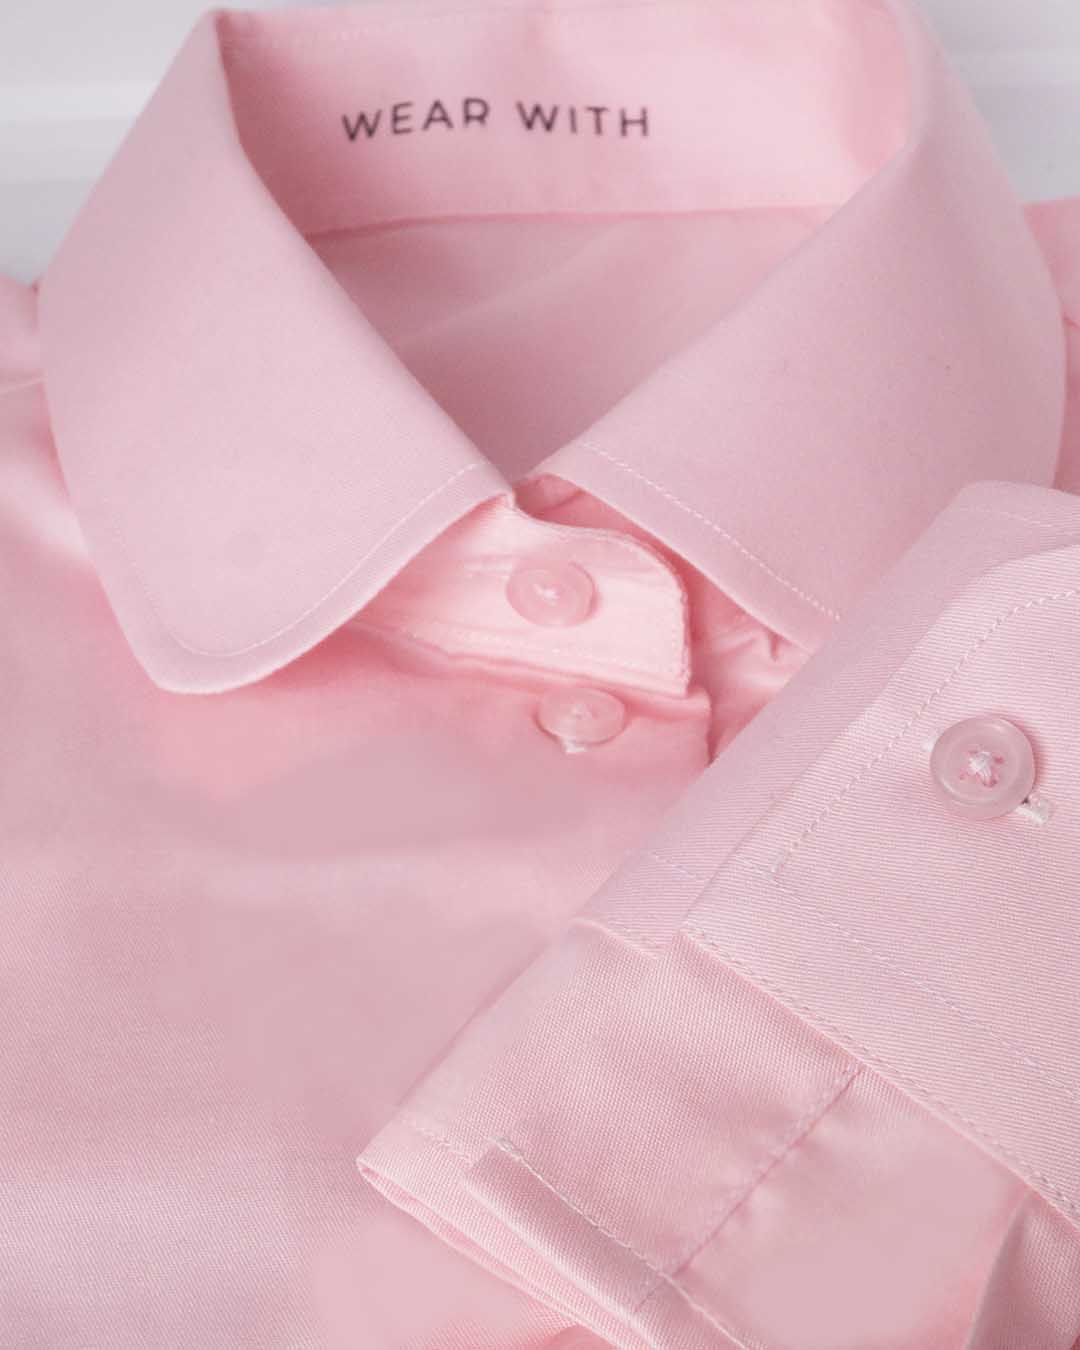 pink shirt collar